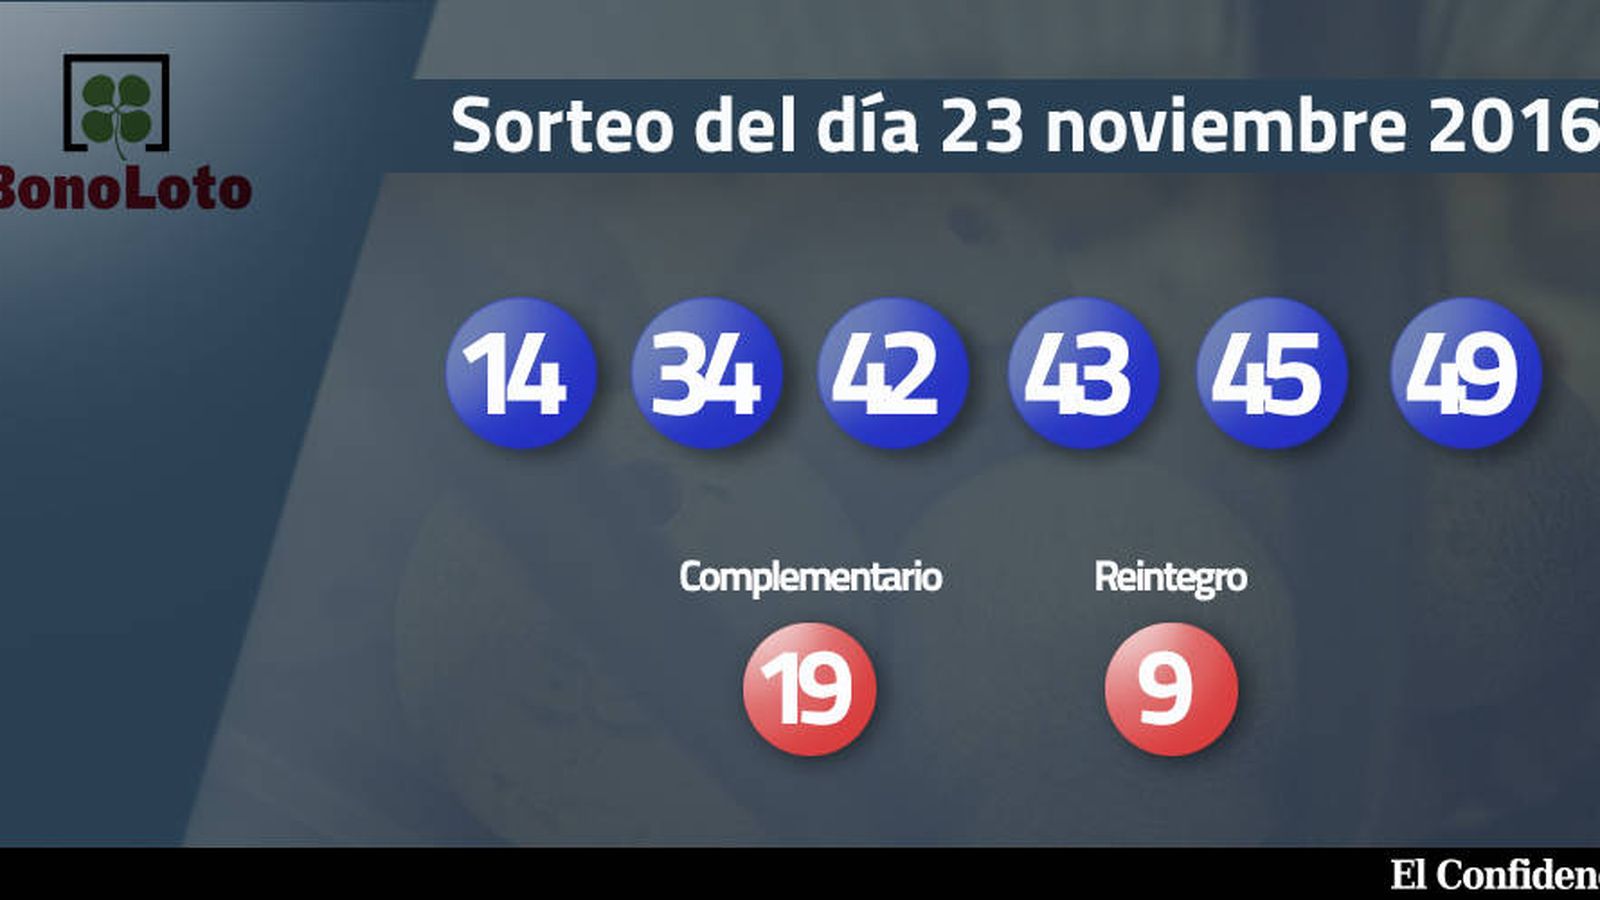 Foto: Resultados del sorteo de la Bonoloto del 23 noviembre 2016 (EC)